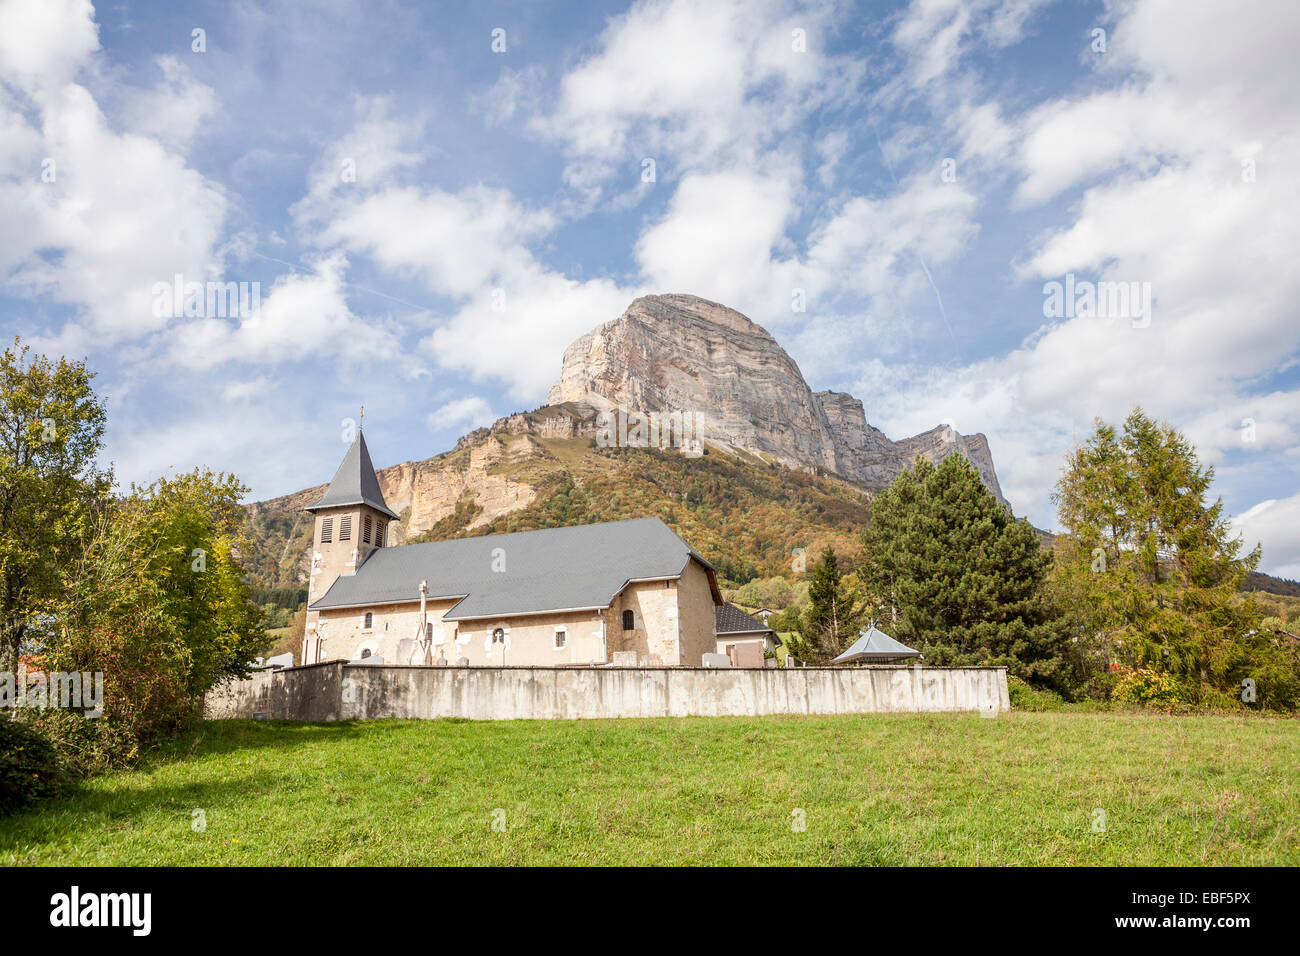 Saint Pancrasse village and Dent de Crolles peak, Parc Naturel de la Chartreusse, Isère, Rhône-Alpes, France Stock Photo